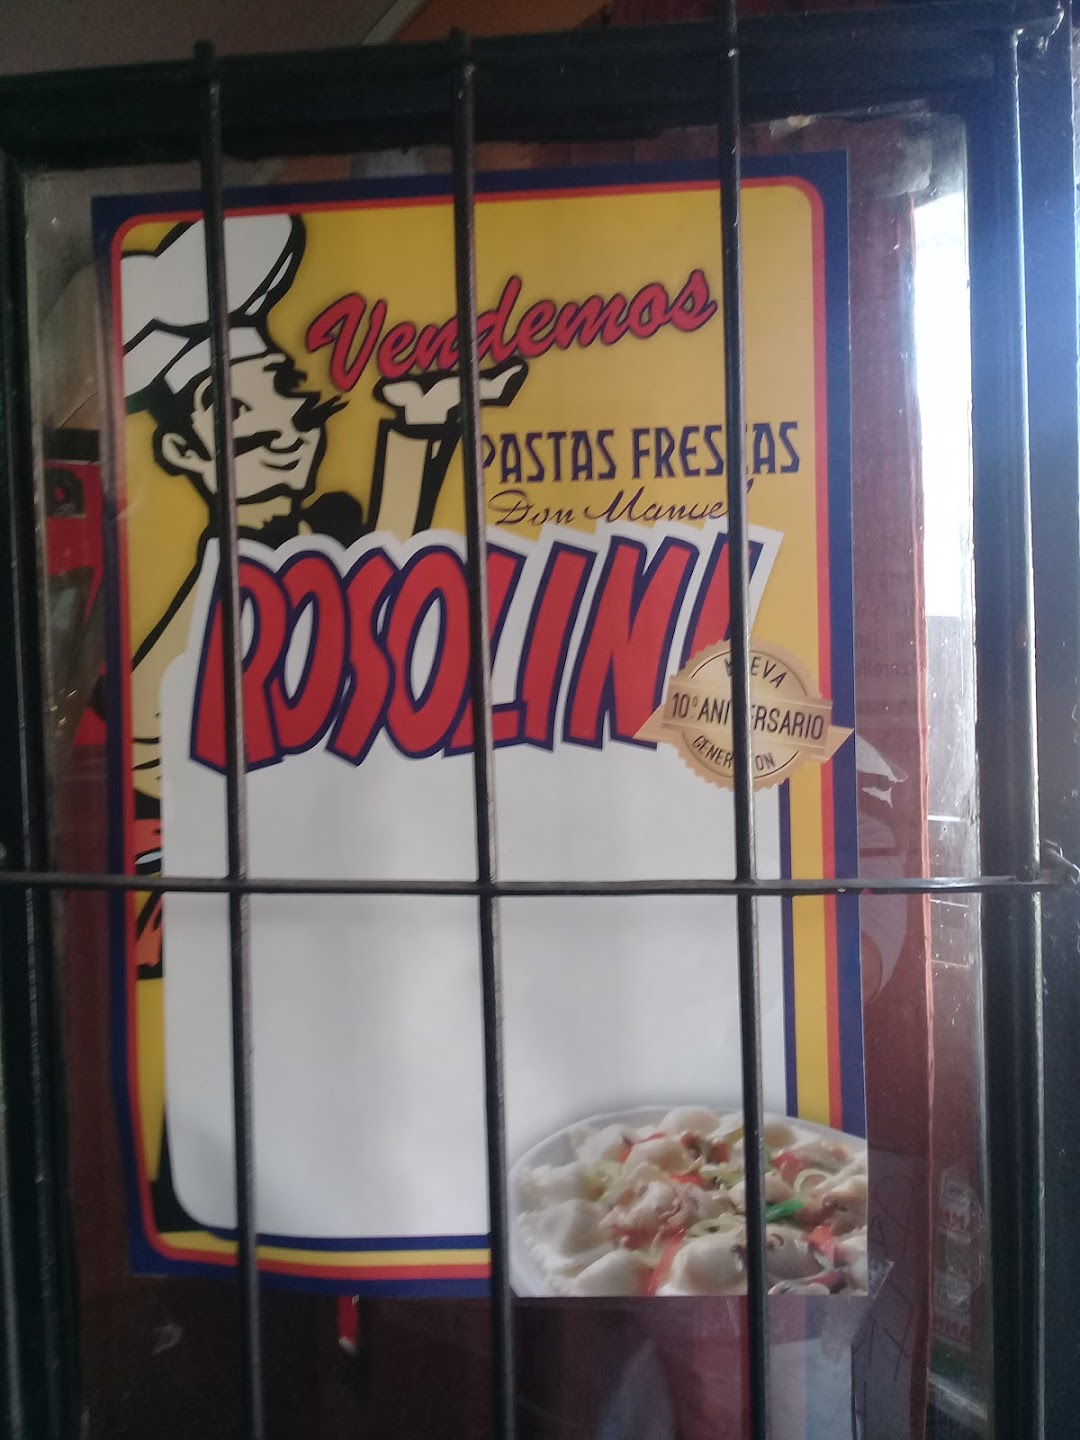 Rosolini - Pastas Frescas